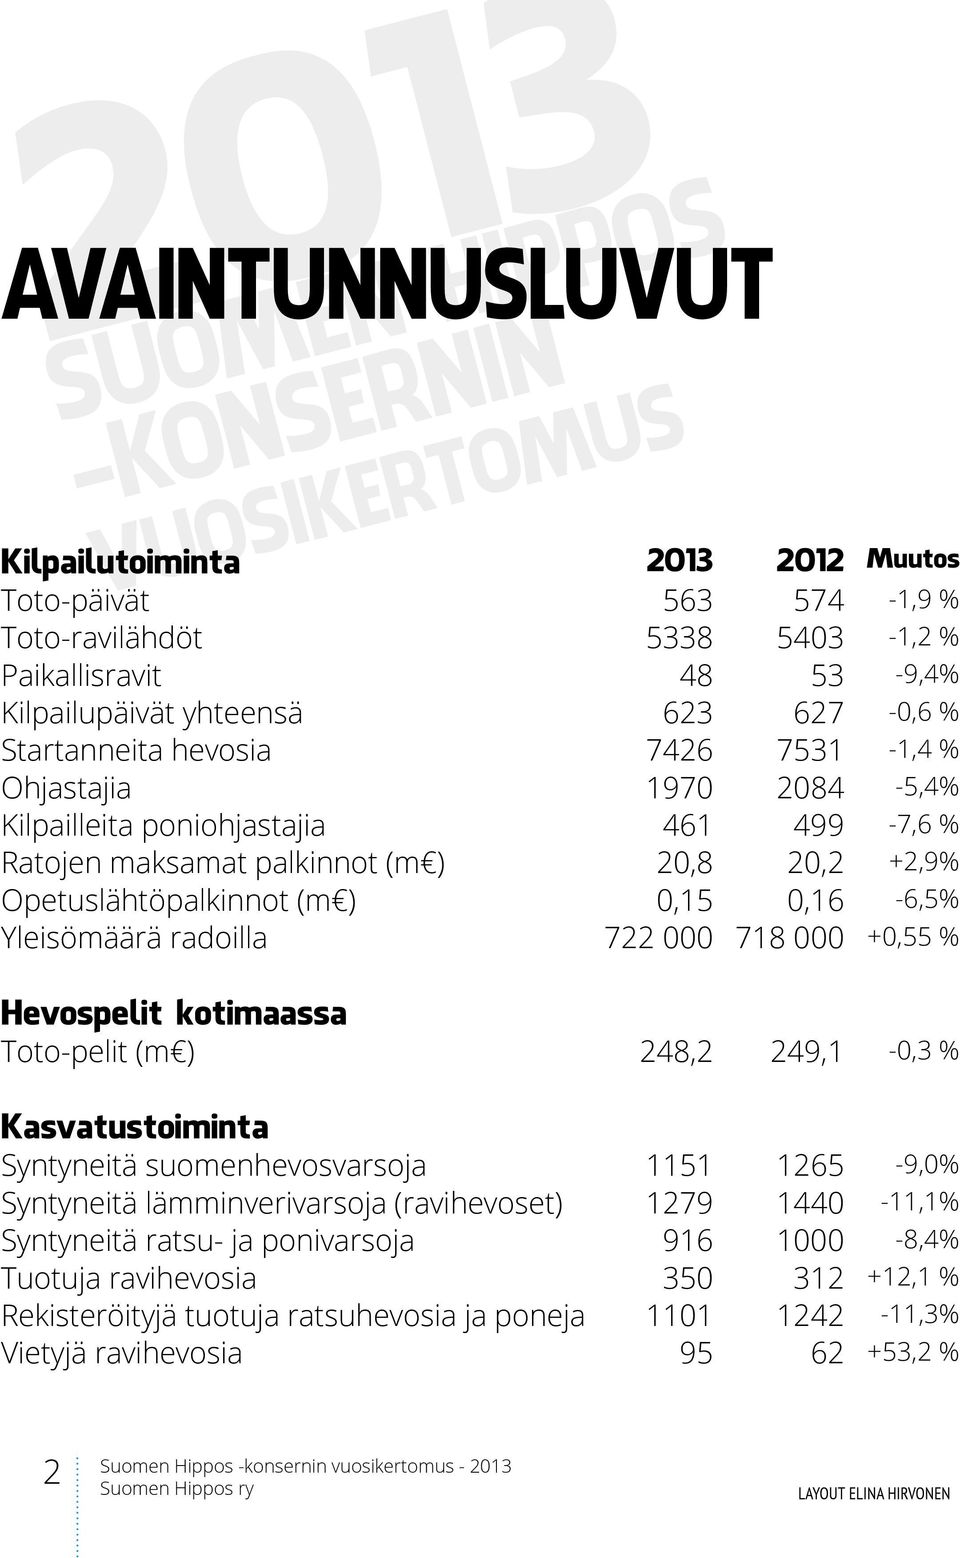 ) 0,15 0,16-6,5% Yleisömäärä radoilla 722 000 718 000 +0,55 % Hevospelit kotimaassa Toto-pelit (m ) 248,2 249,1-0,3 % Kasvatustoiminta Syntyneitä suomenhevosvarsoja 1151 1265-9,0% Syntyneitä